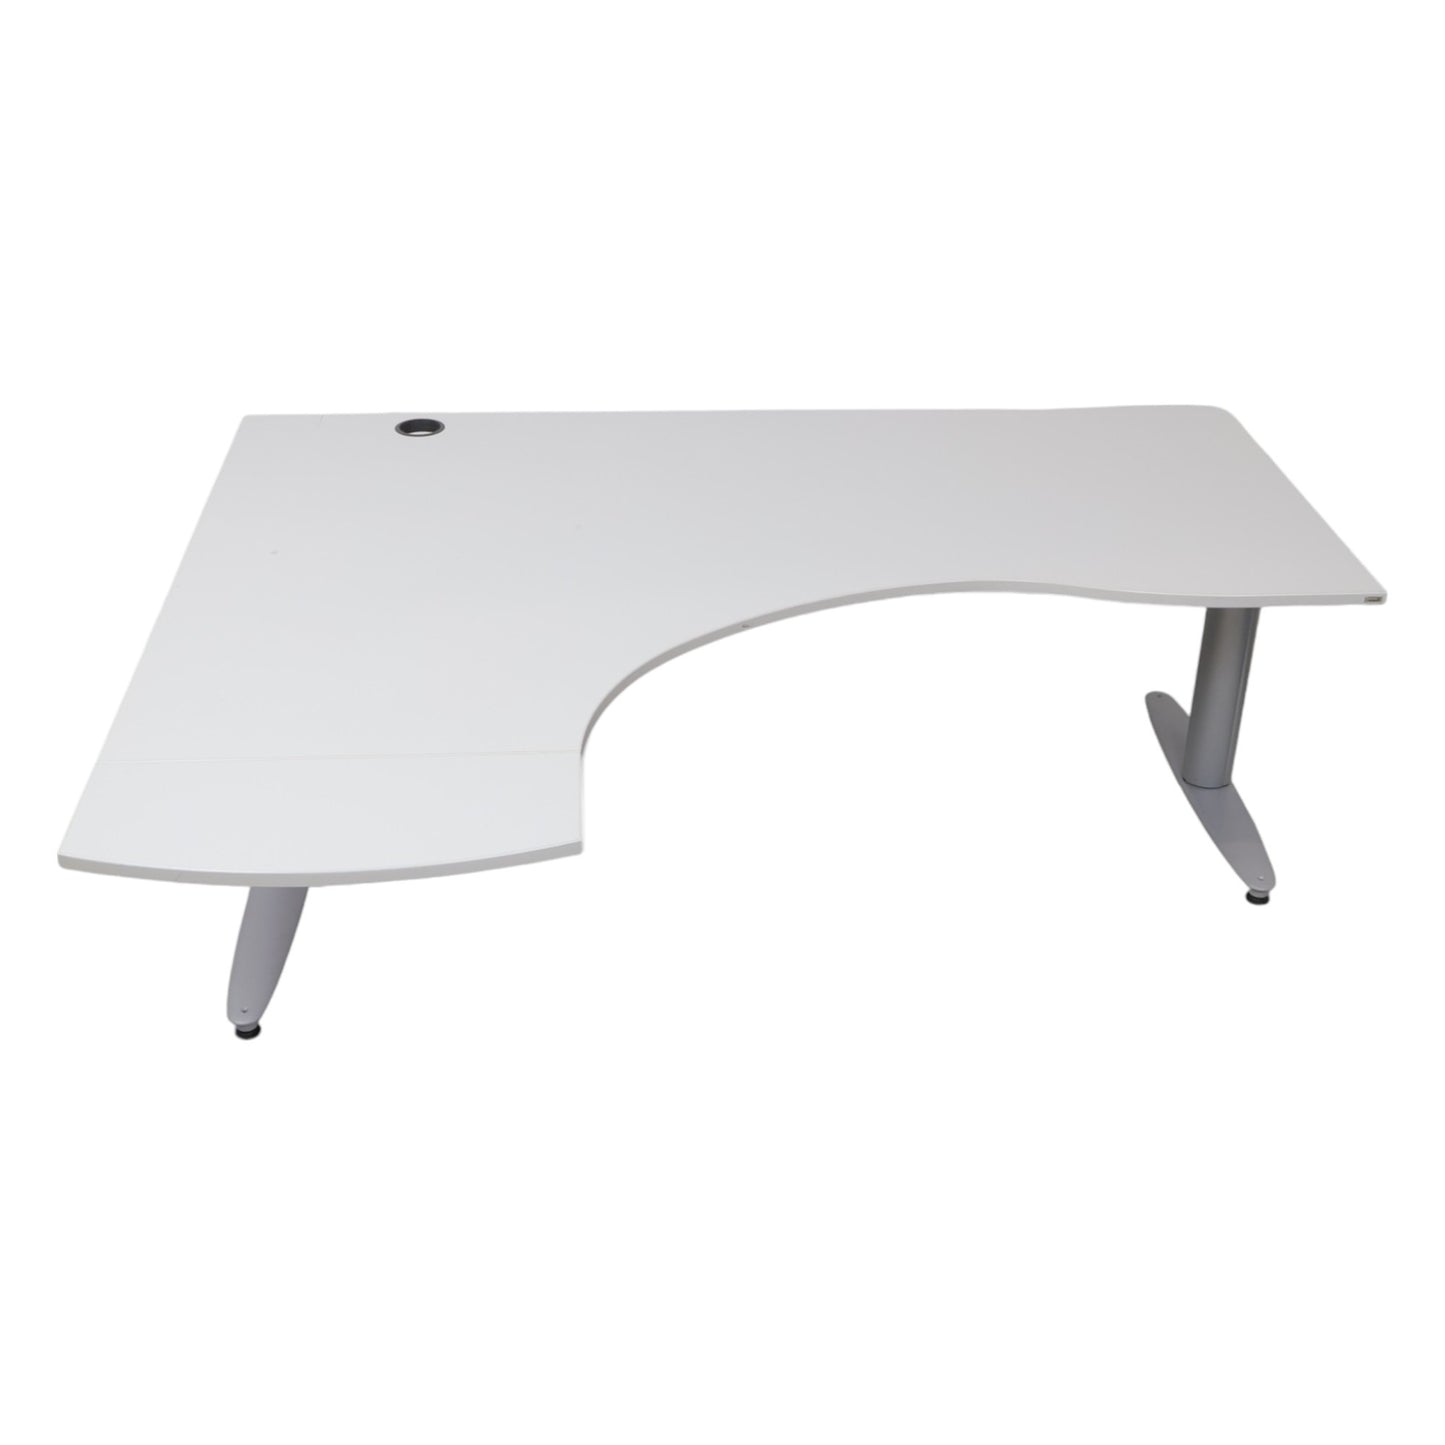 Kvalitetsikret | 180×145, Kinnarps elektrisk hev/senk skrivebord med sving i lys grå